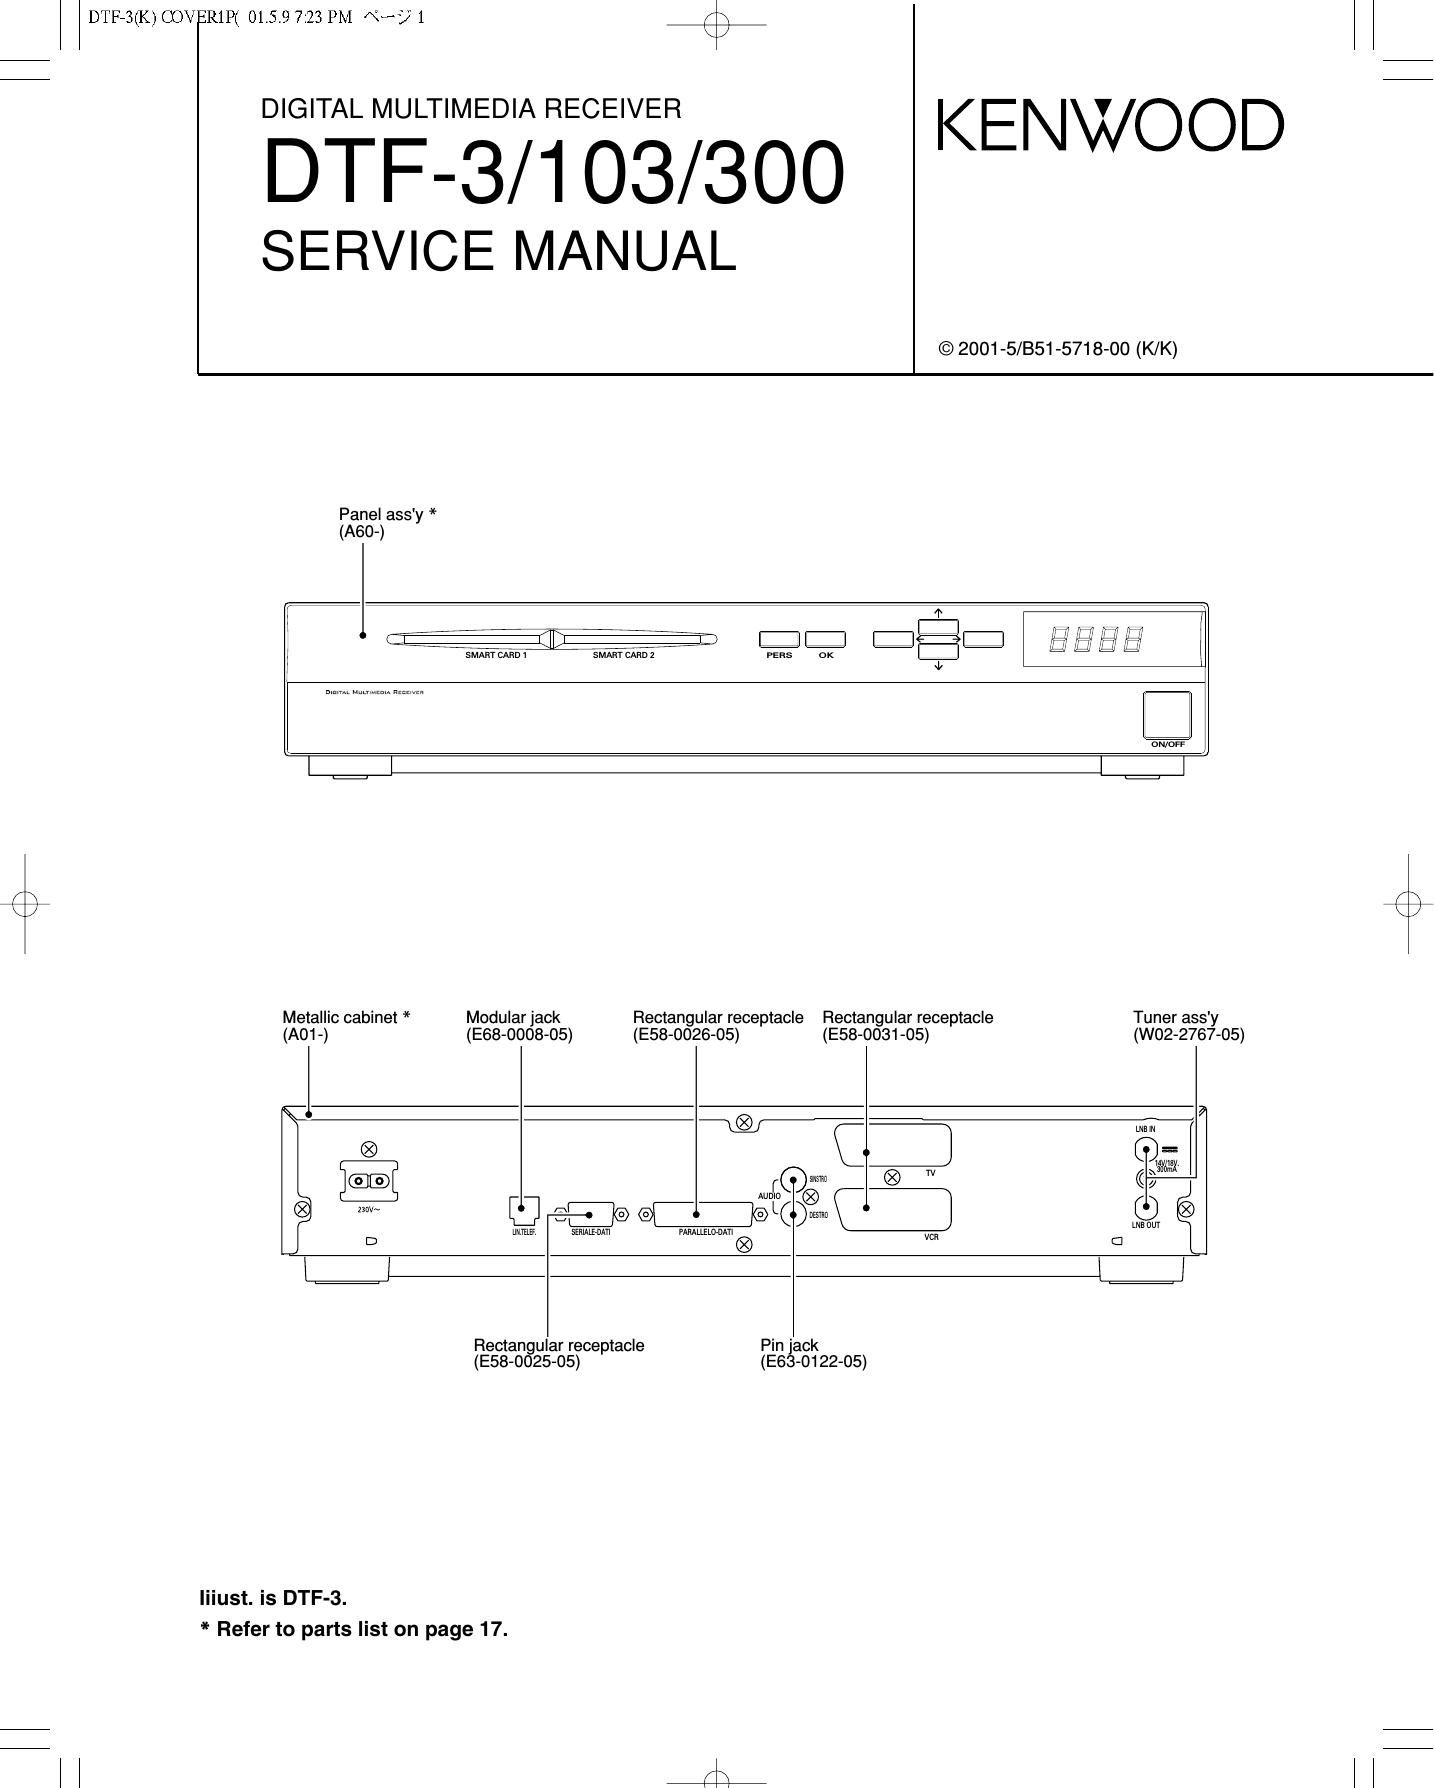 Kenwood DTF 3 Service Manual